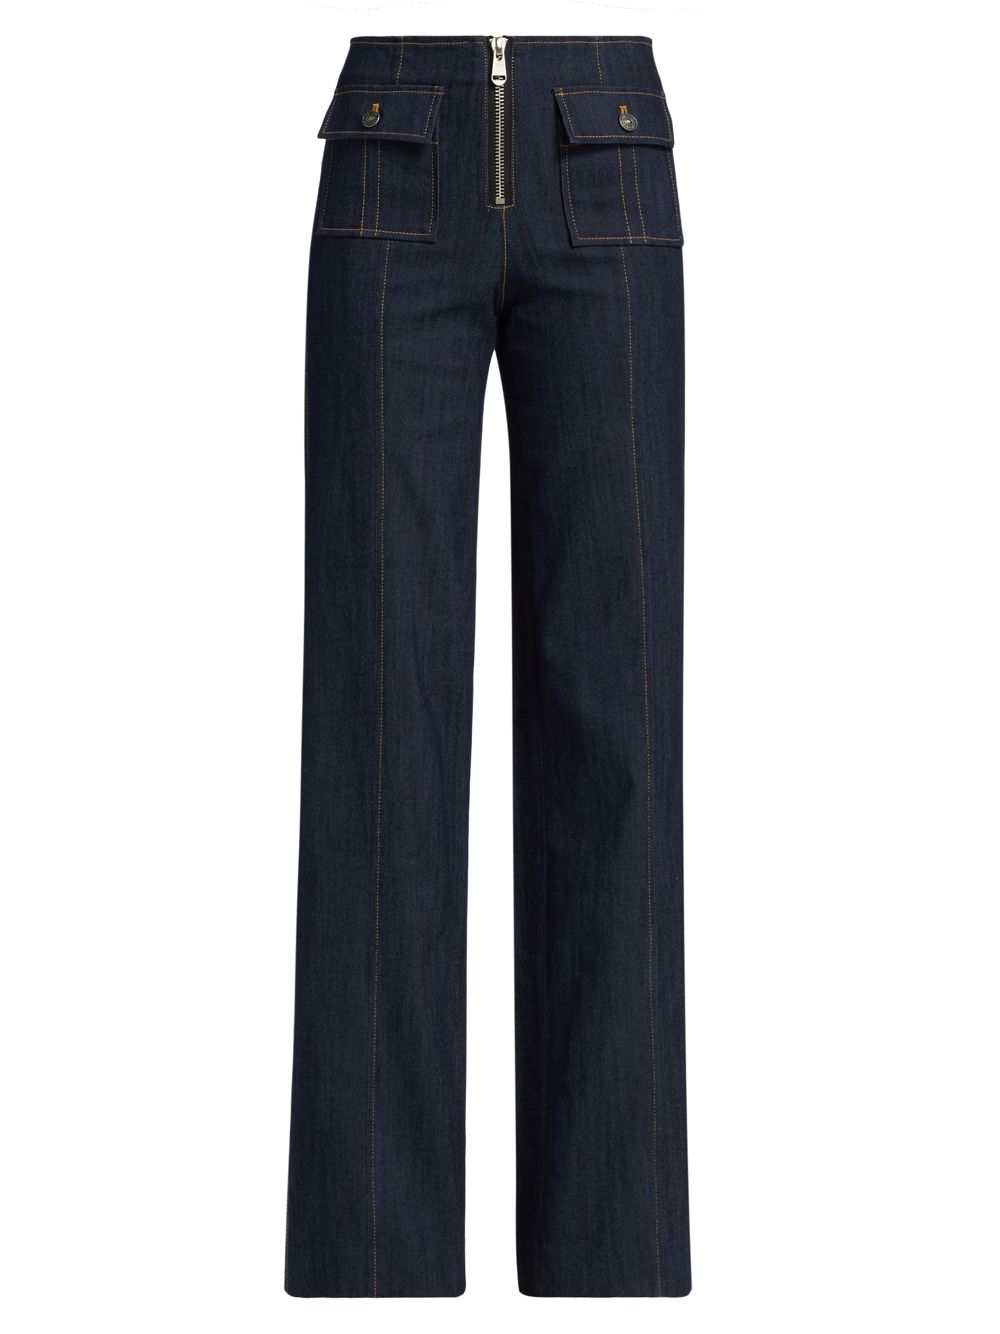 Широкие джинсы Azure с высокой посадкой Cinq à Sept, индиго джинсы francine с высокой посадкой цвета индиго cinq à sept цвет blue